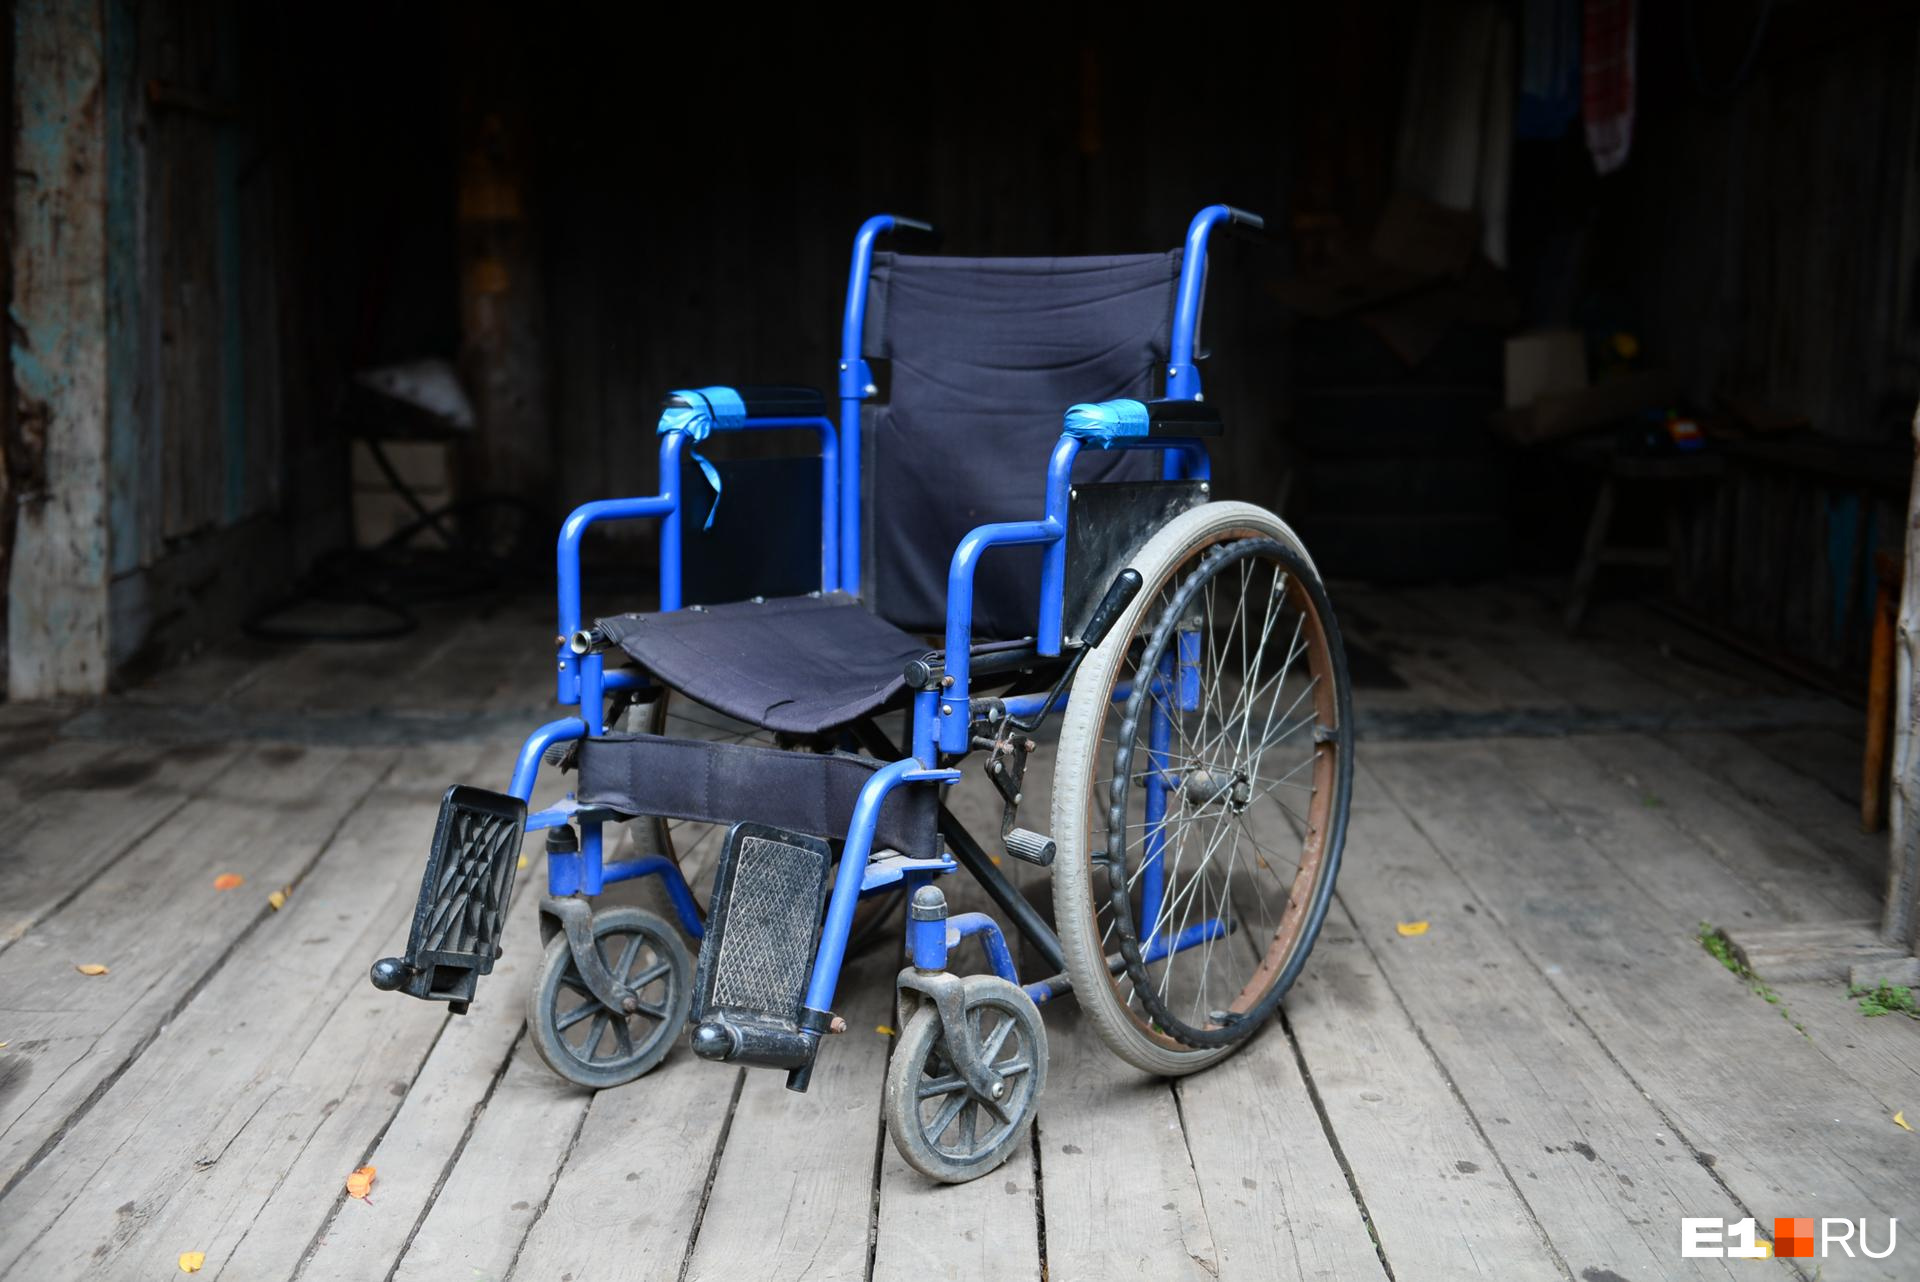 Бастрыкин заинтересовался историей инвалида-колясочника из Читы сняли с очереди на жилье без причи